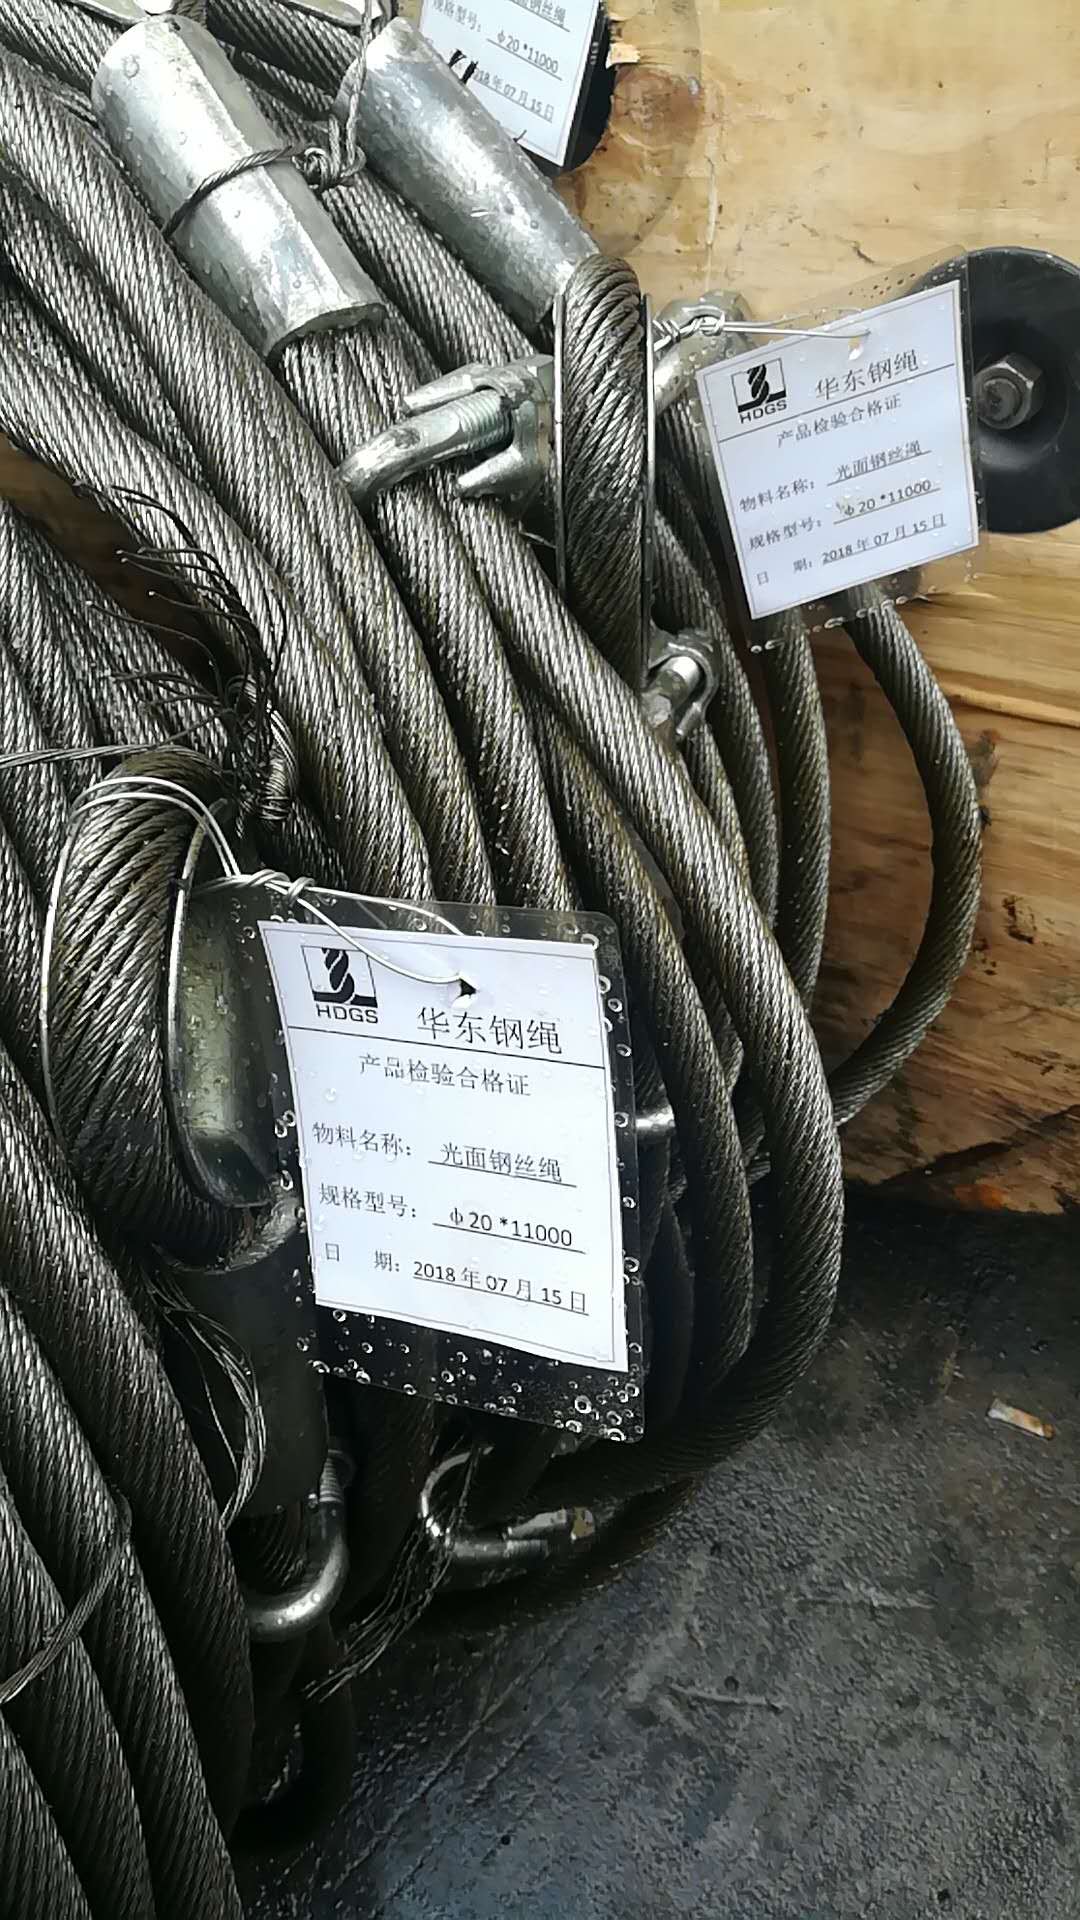 钢丝绳索具,钢丝绳加工,钢丝绳型号,钢丝绳采购,华东钢丝绳,光面钢丝绳